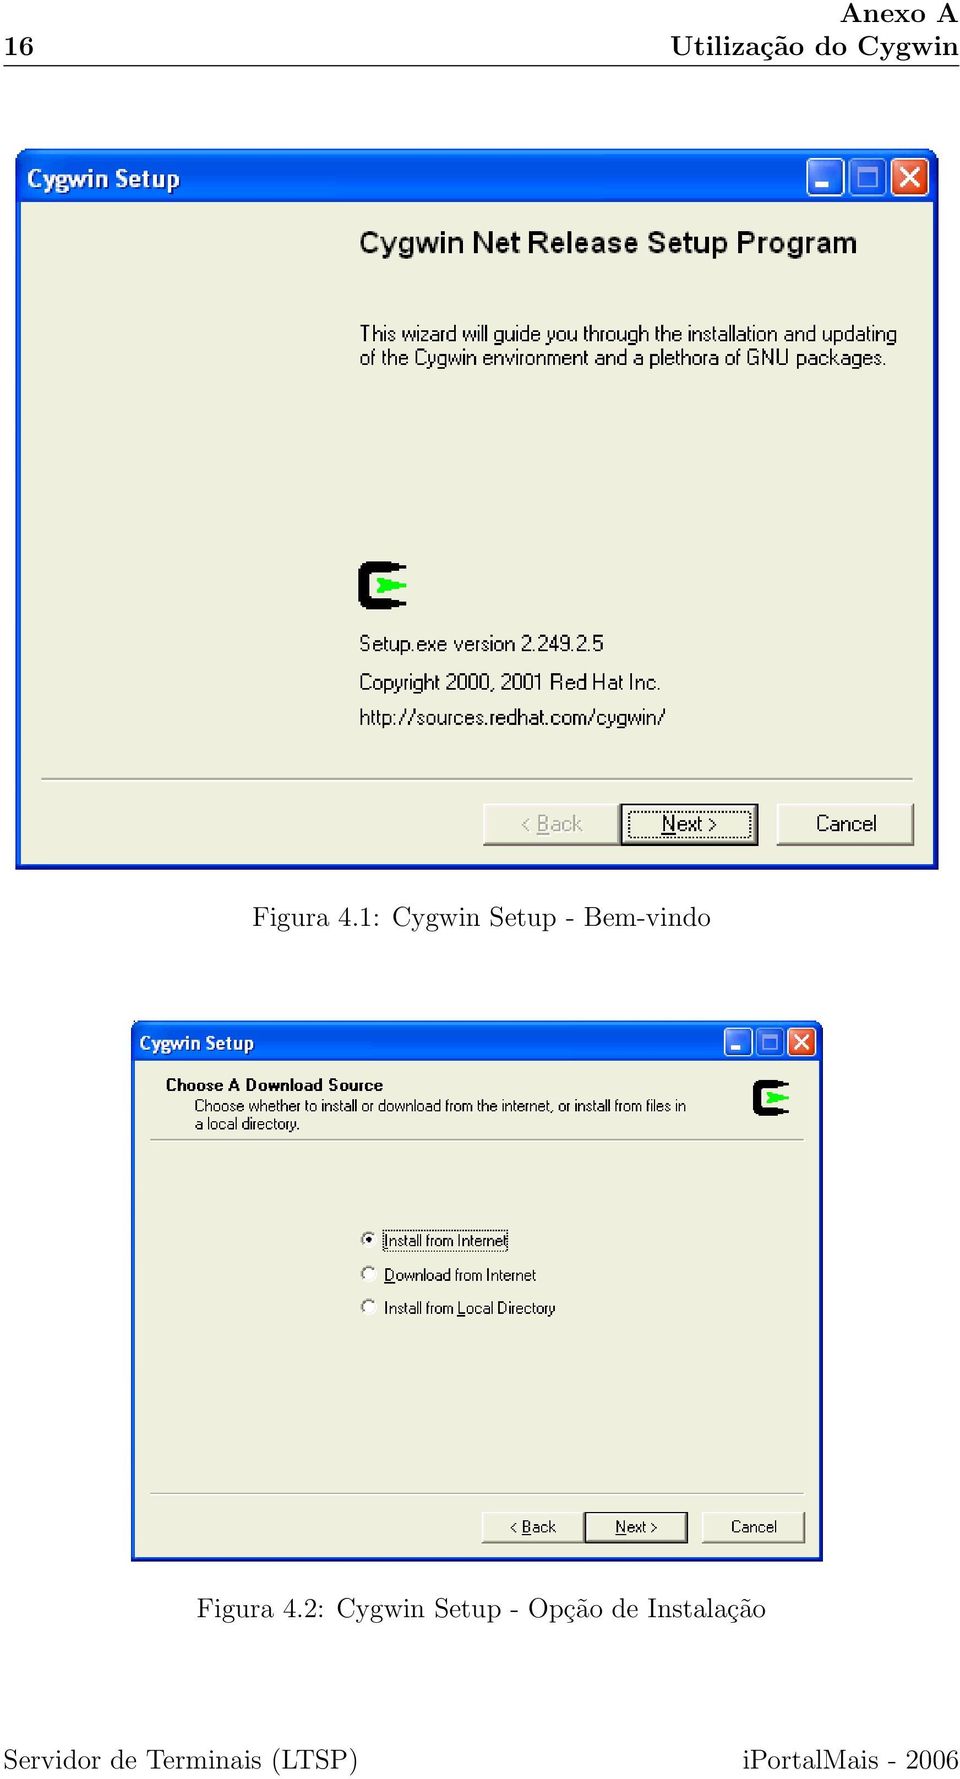 2: Cygwin Setup - Opção de Instalação